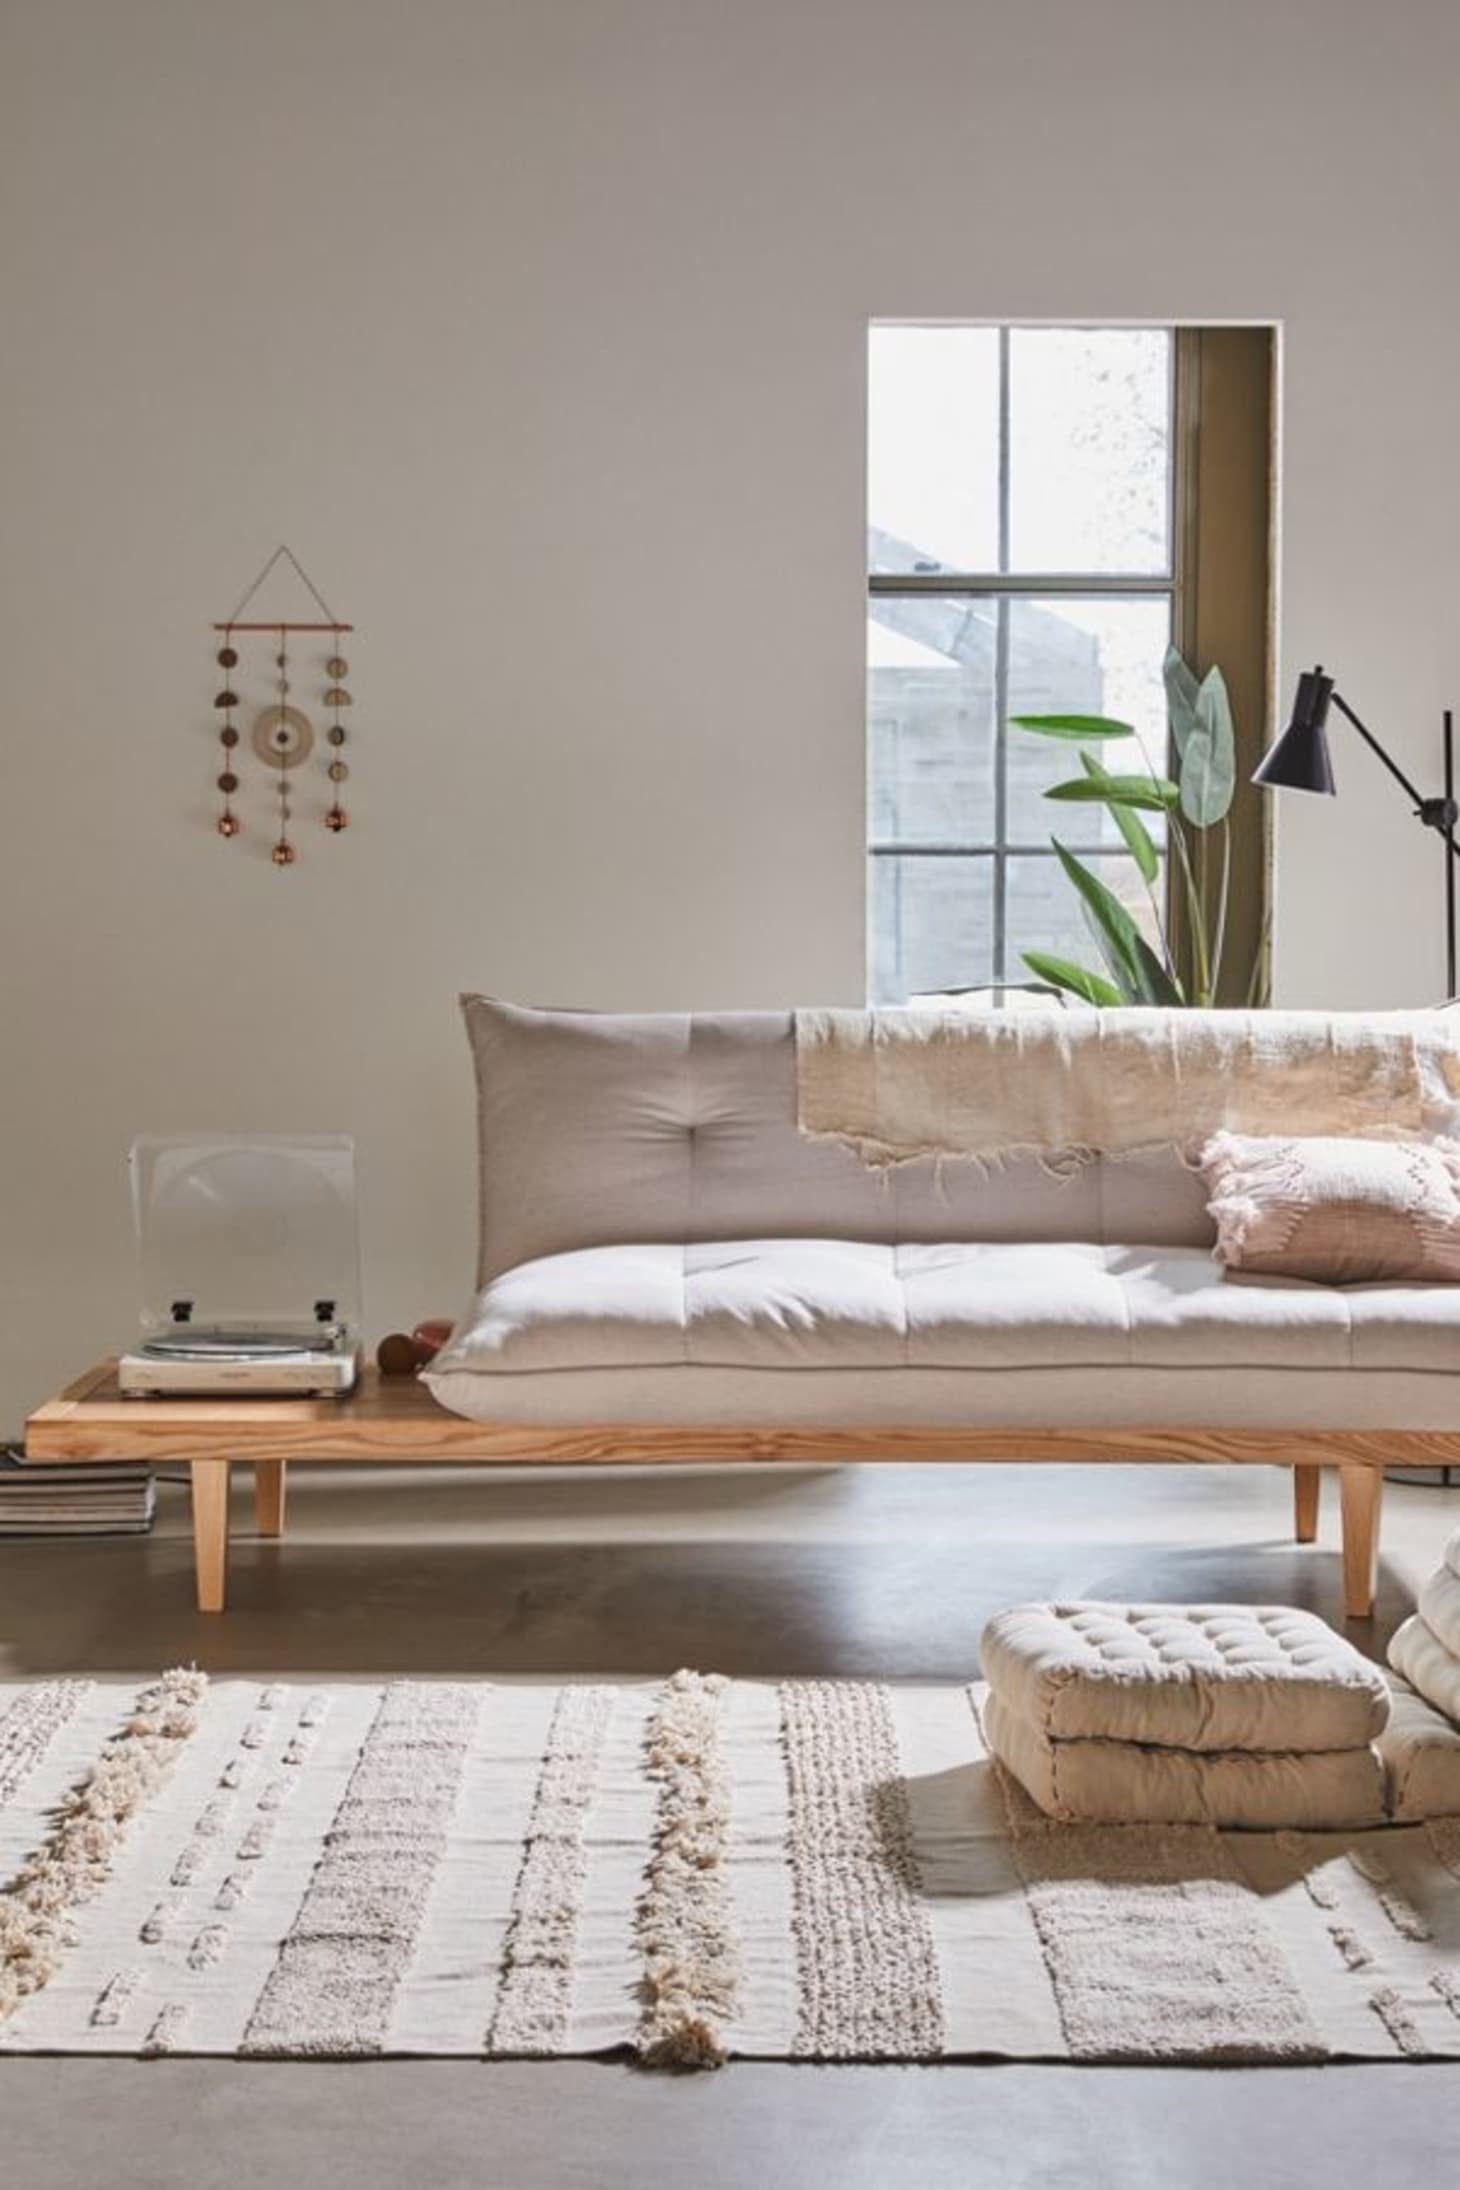 Sofá-cama: ideias diferentes para usar o móvel na decoração (Foto: Pinterest)